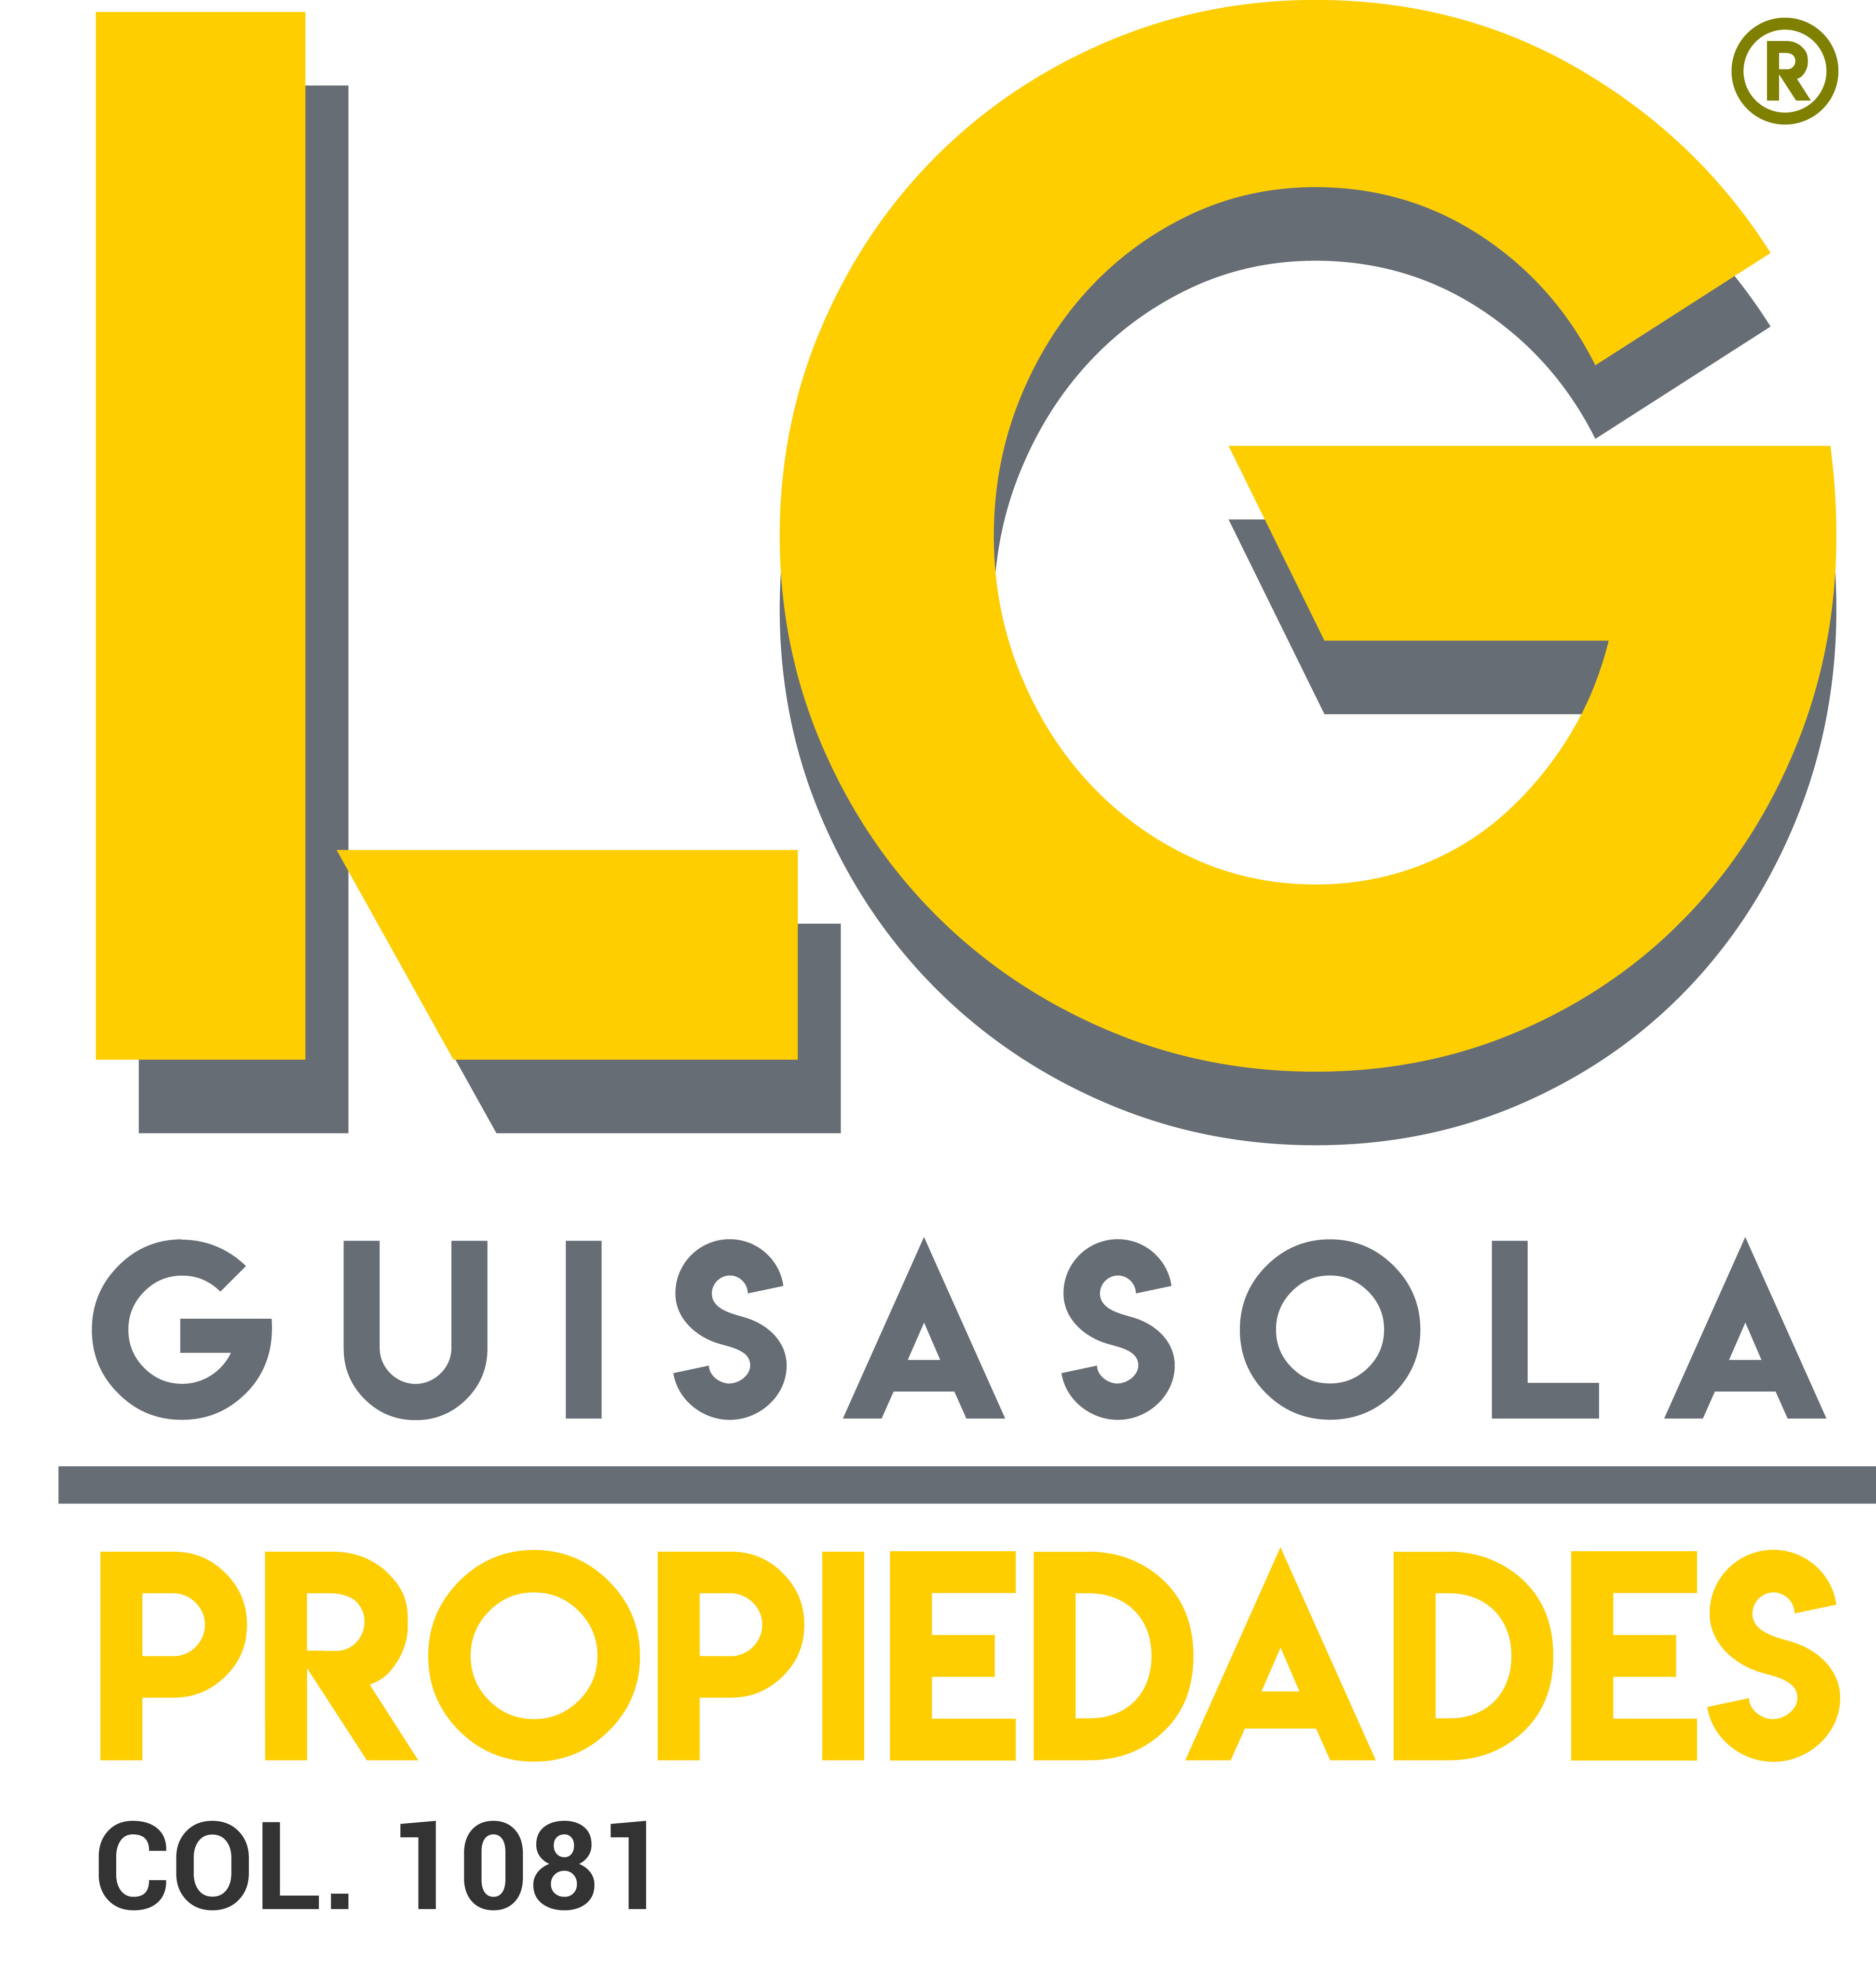 LG GUISASOLA PROPIEDADES